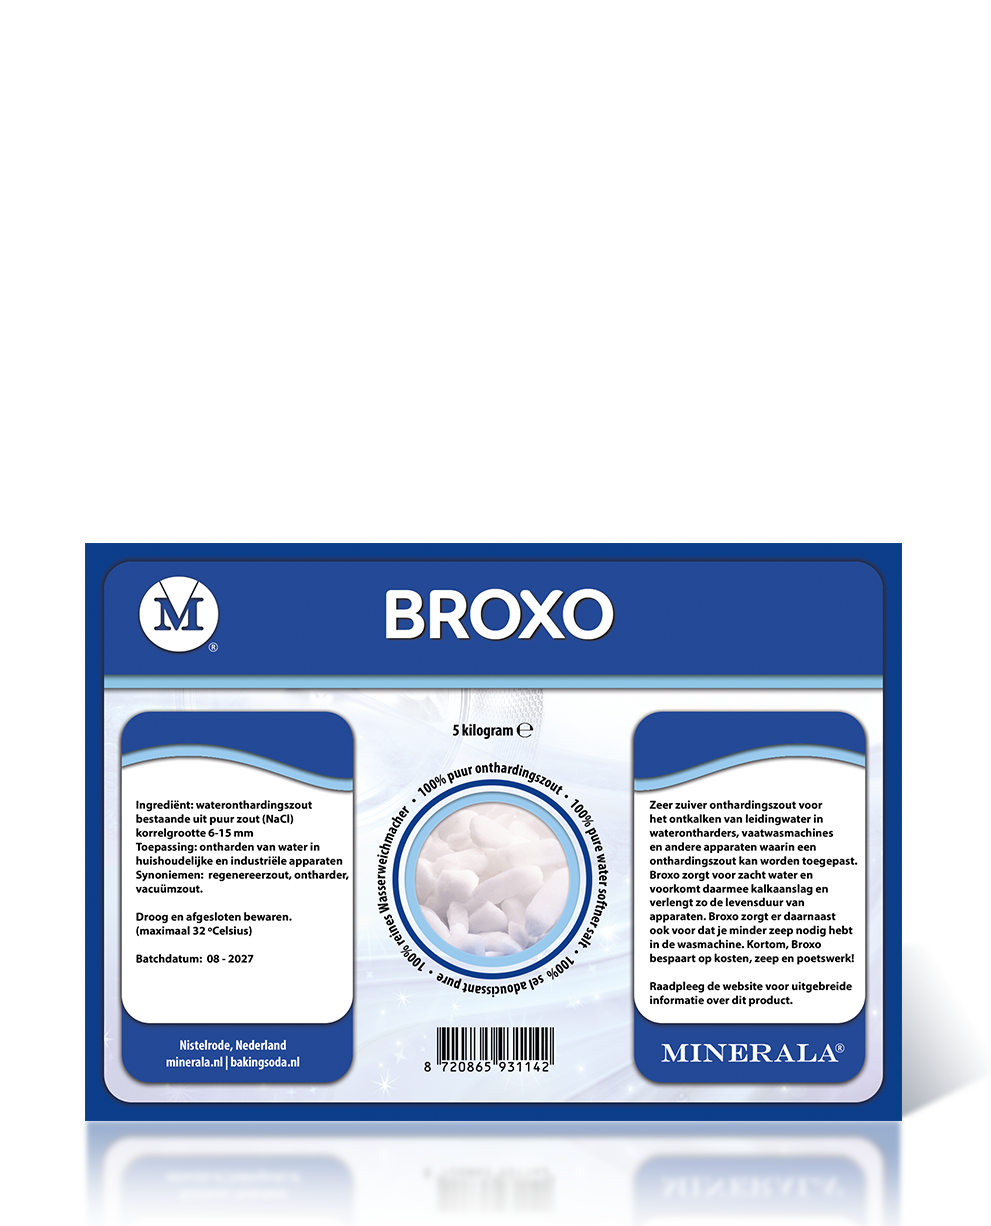 Minerala - Broxo 5000gram. Baking Soda NL Nistelrode